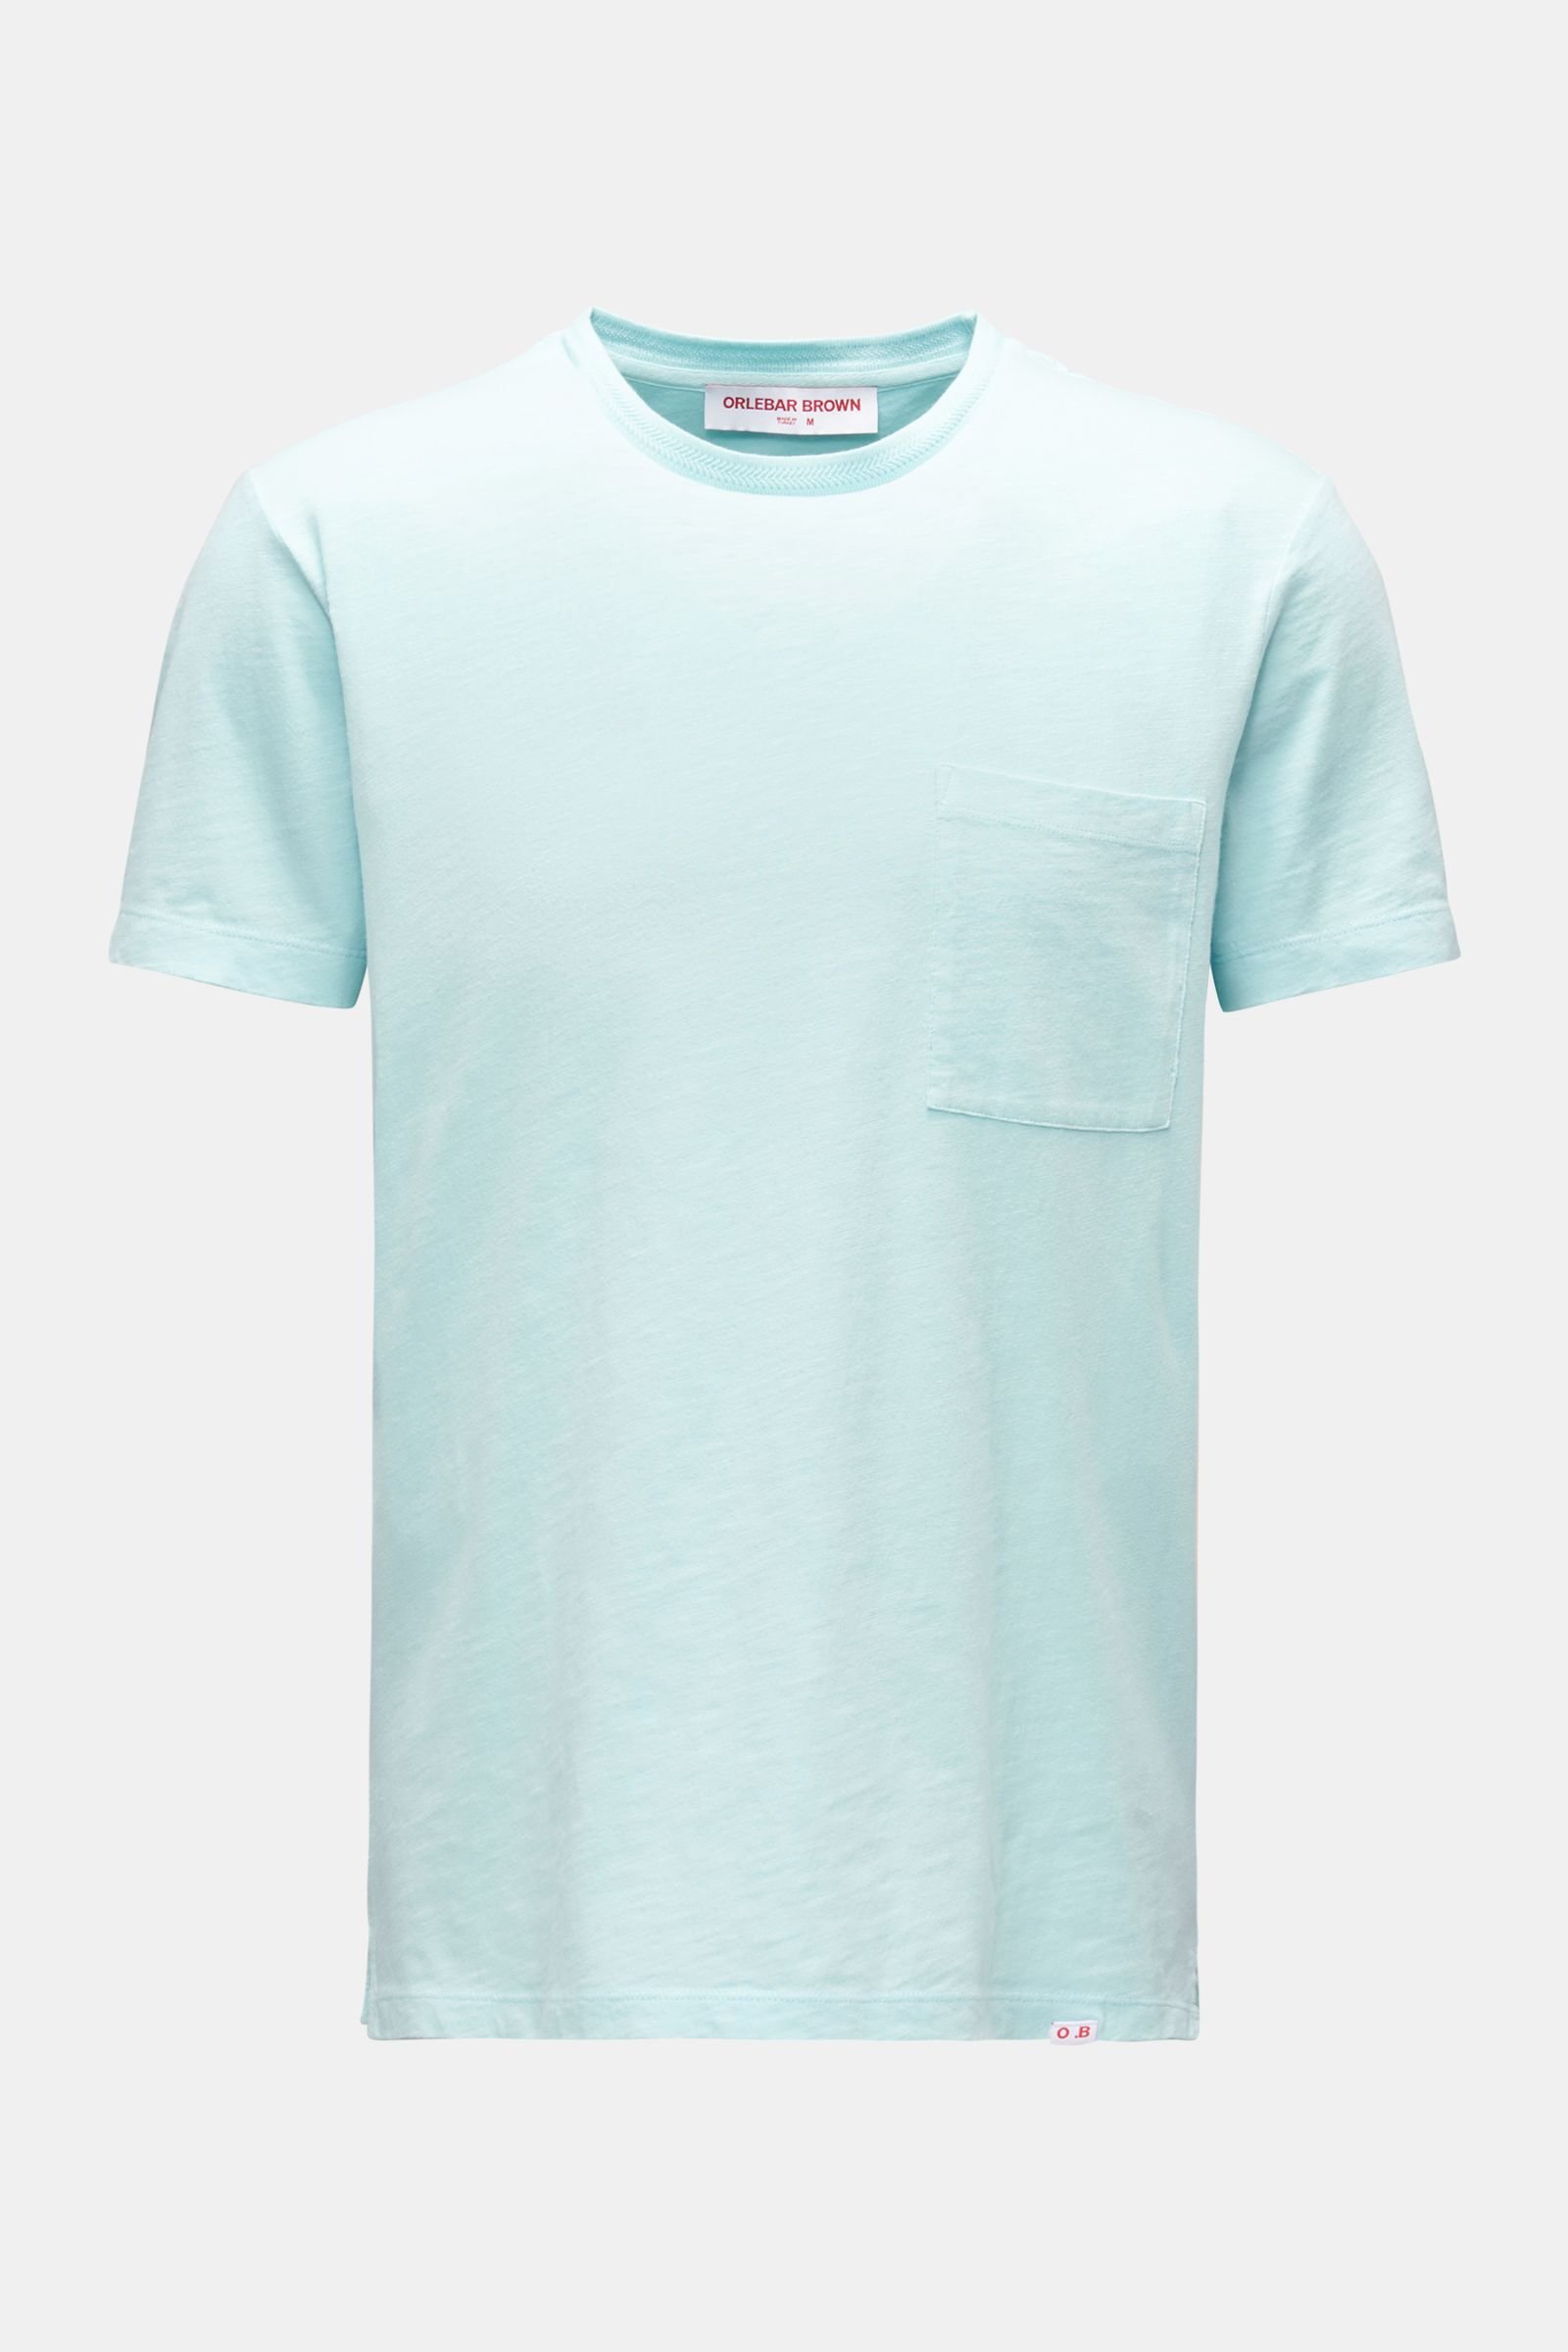 Rundhals-T-Shirt 'OB Classic Tee' mintgrün